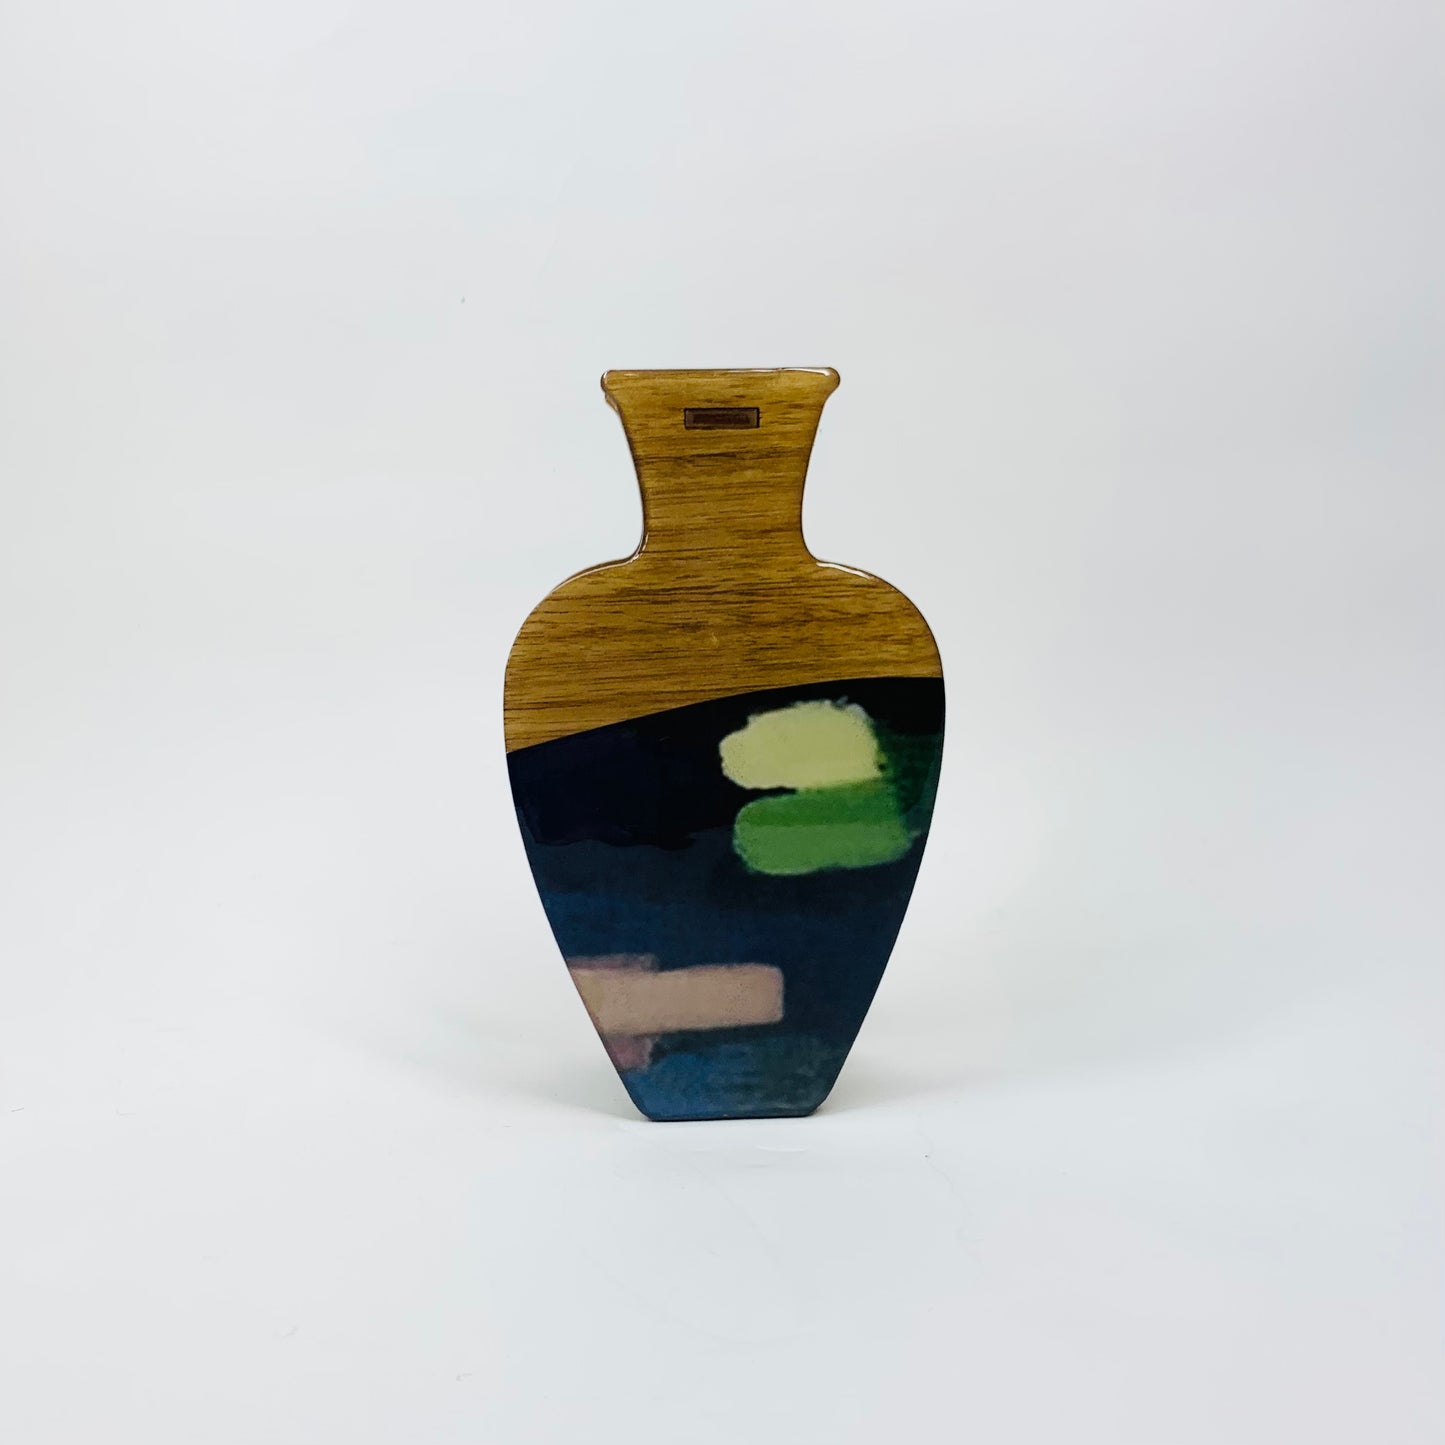 Retro Japanese lacquer wood test tube vase